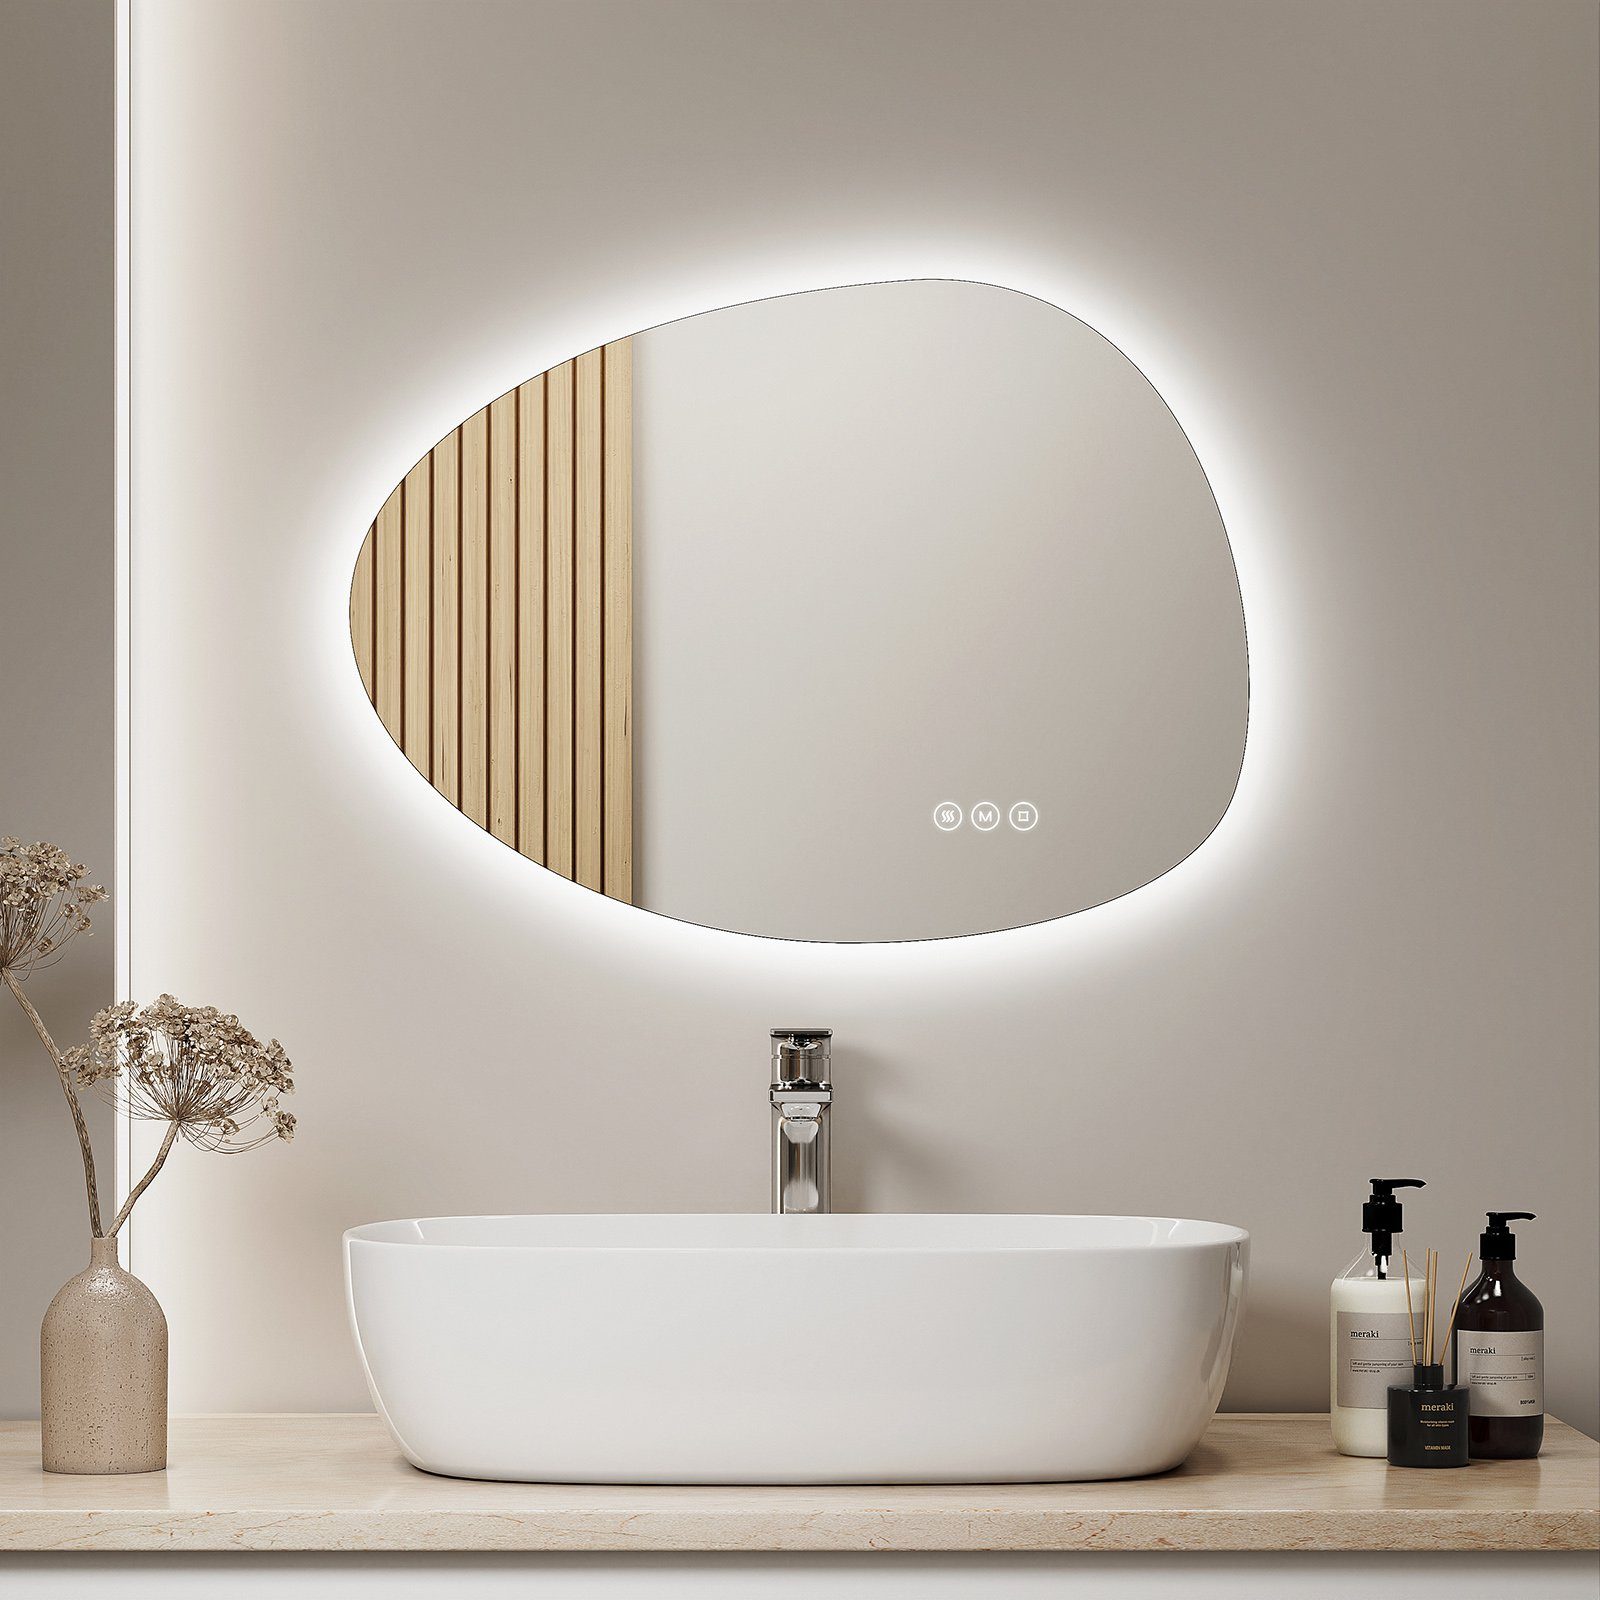 S'AFIELINA und Badspiegel Dimmbar, Beleuchtung und LED Lichtfarben 3 Memory-Funktion Anti-Beschlag- Wandspiegel mit